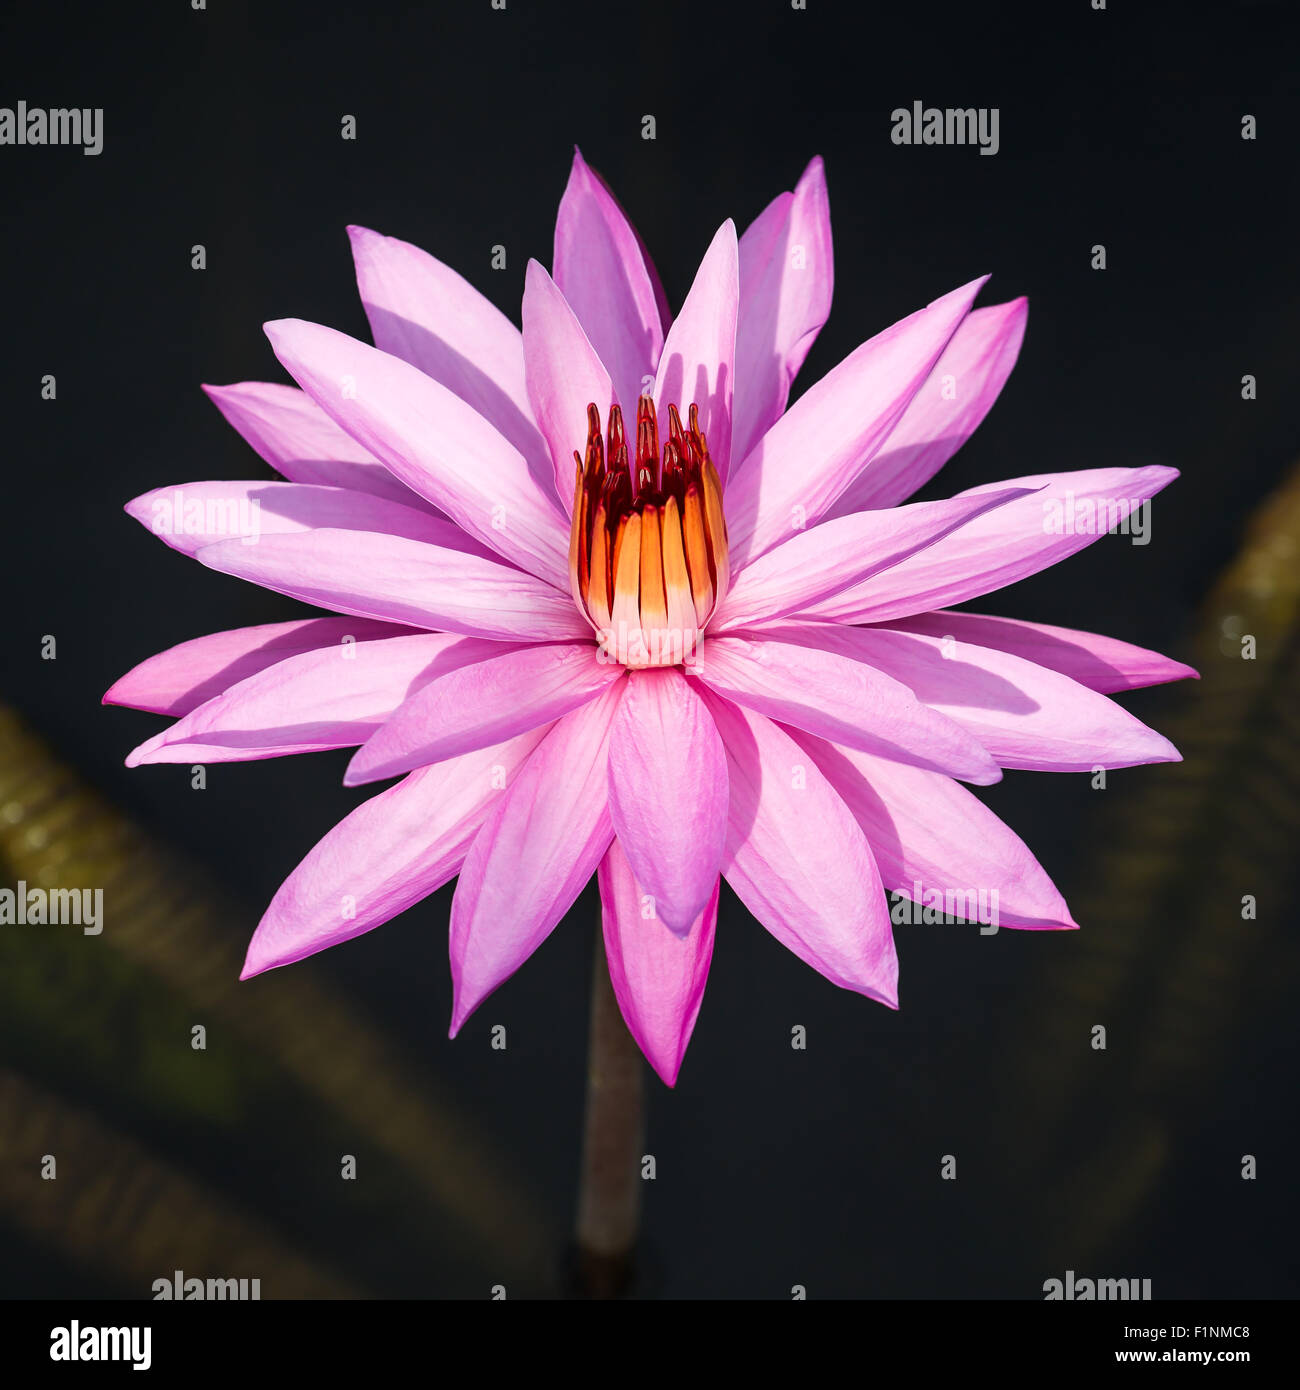 Beautiful pink water lily closeup Stock Photo